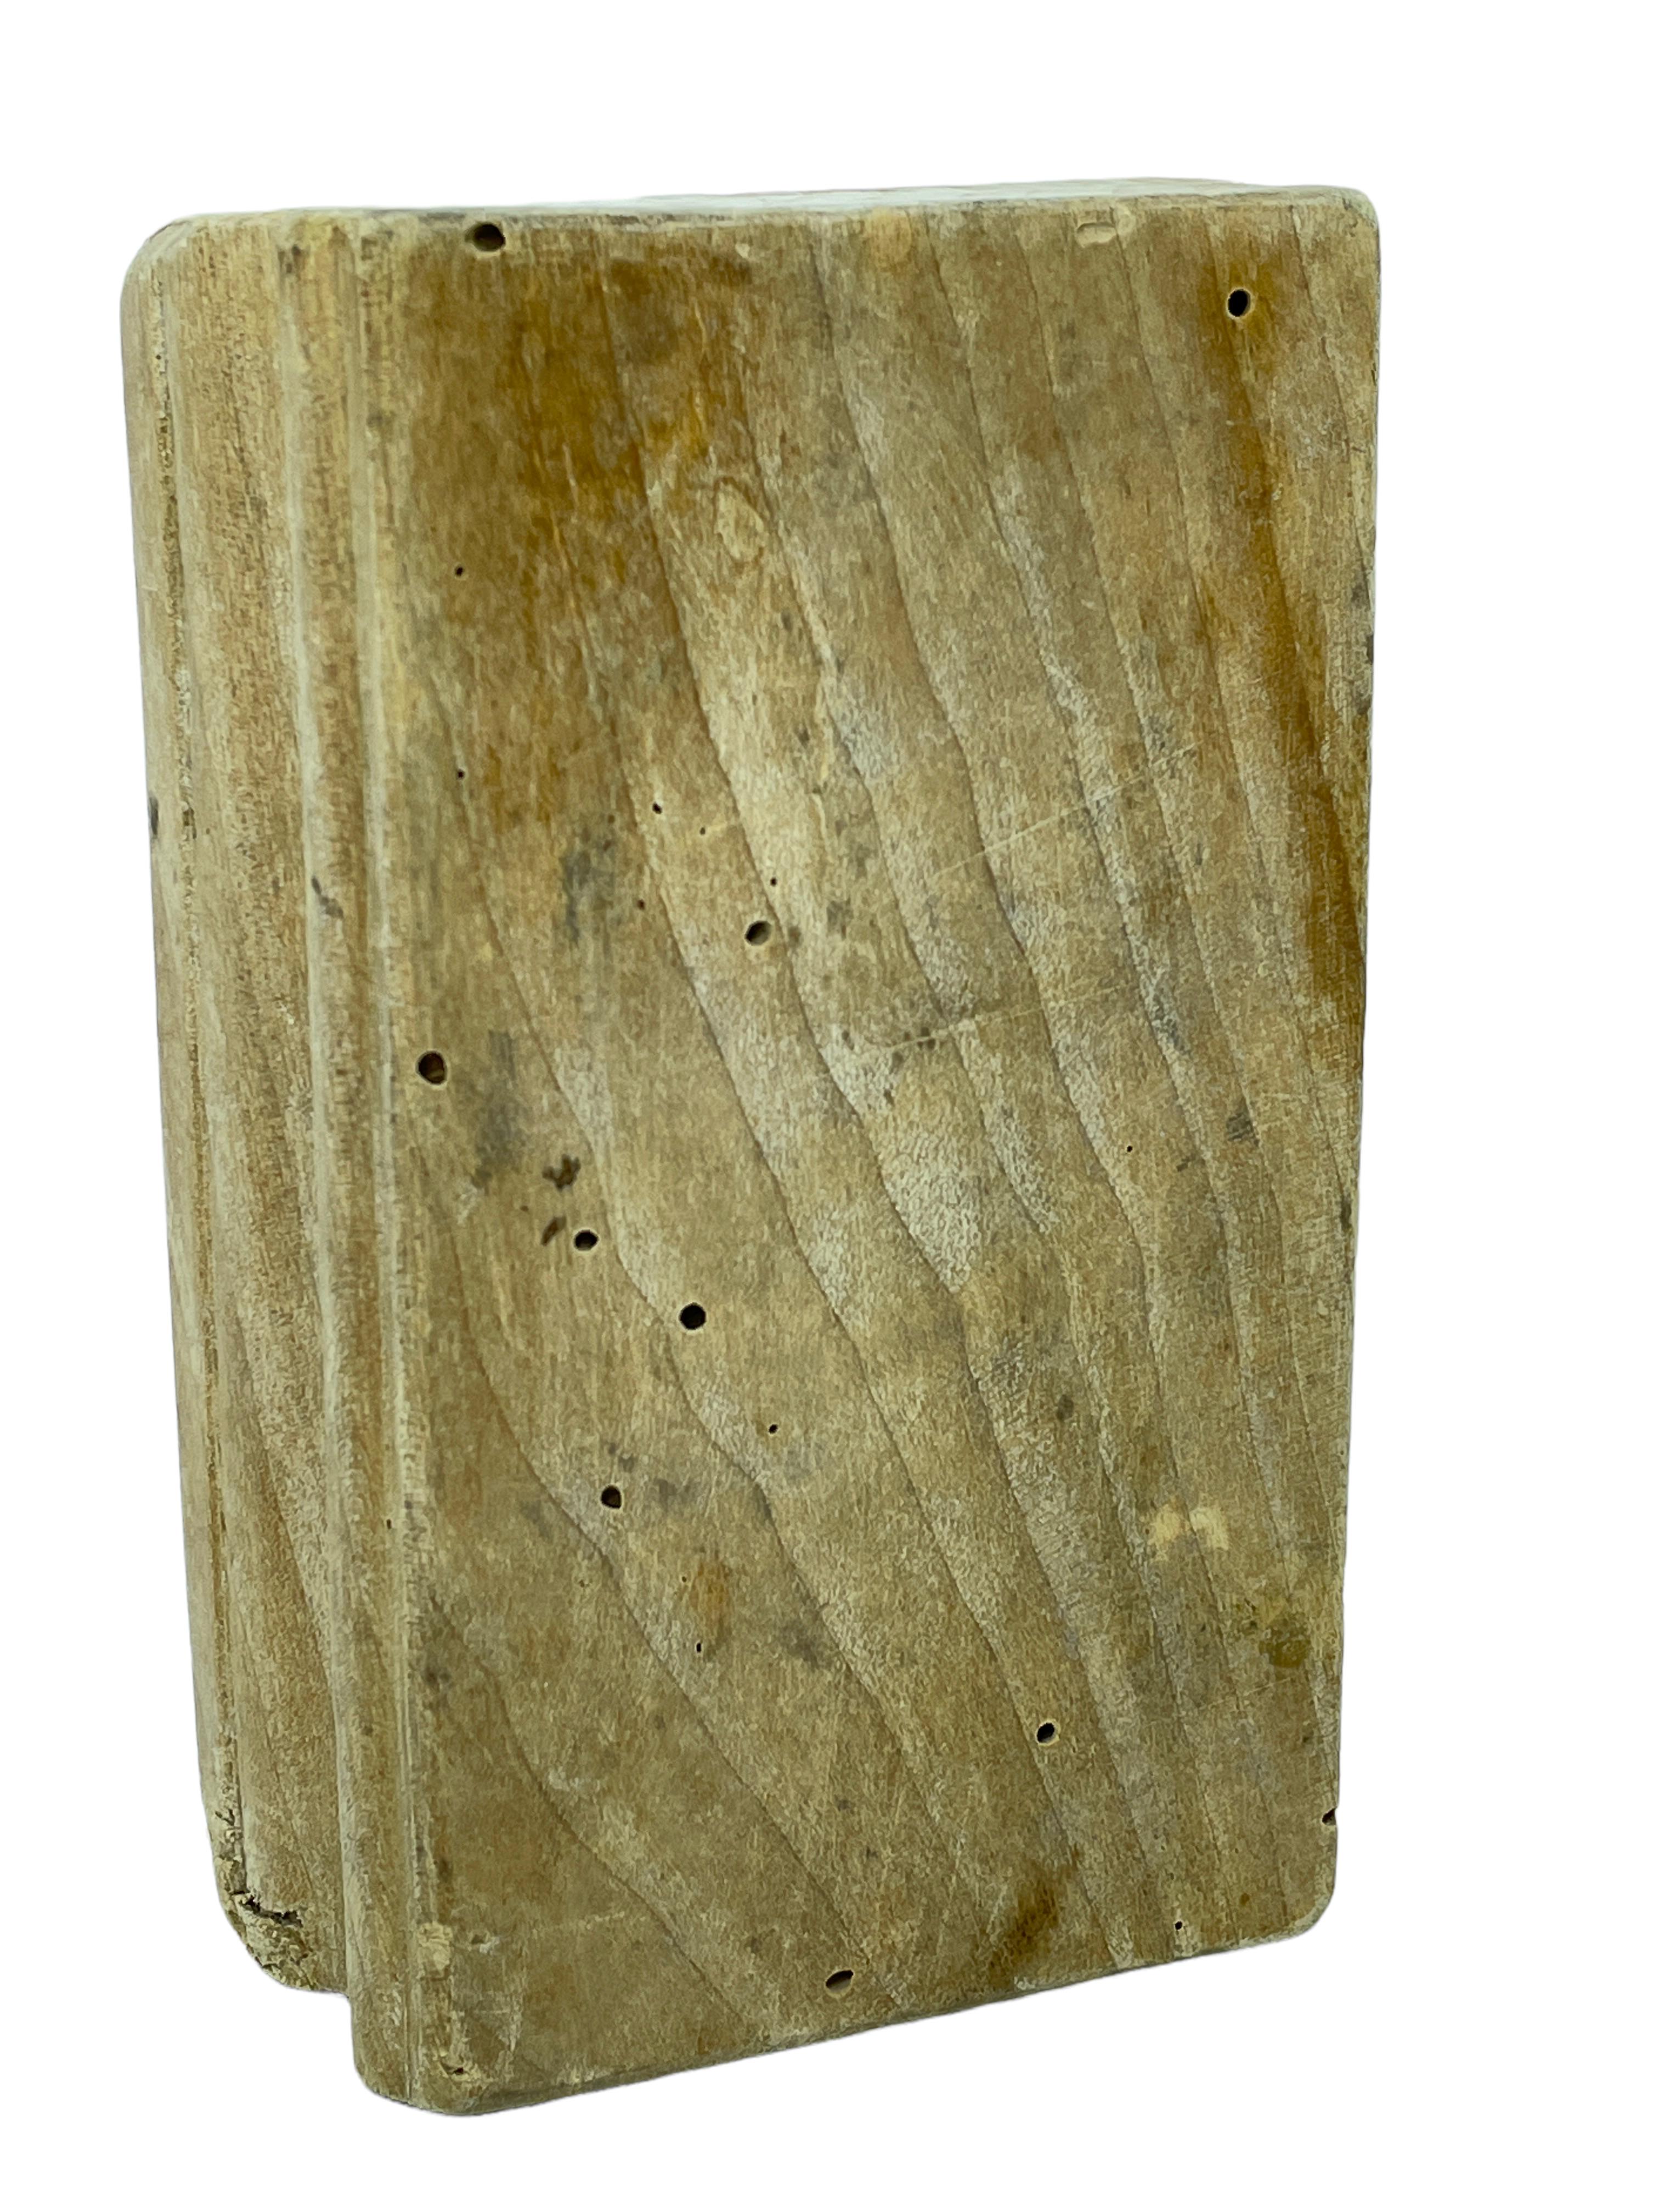 wooden butter mold antique